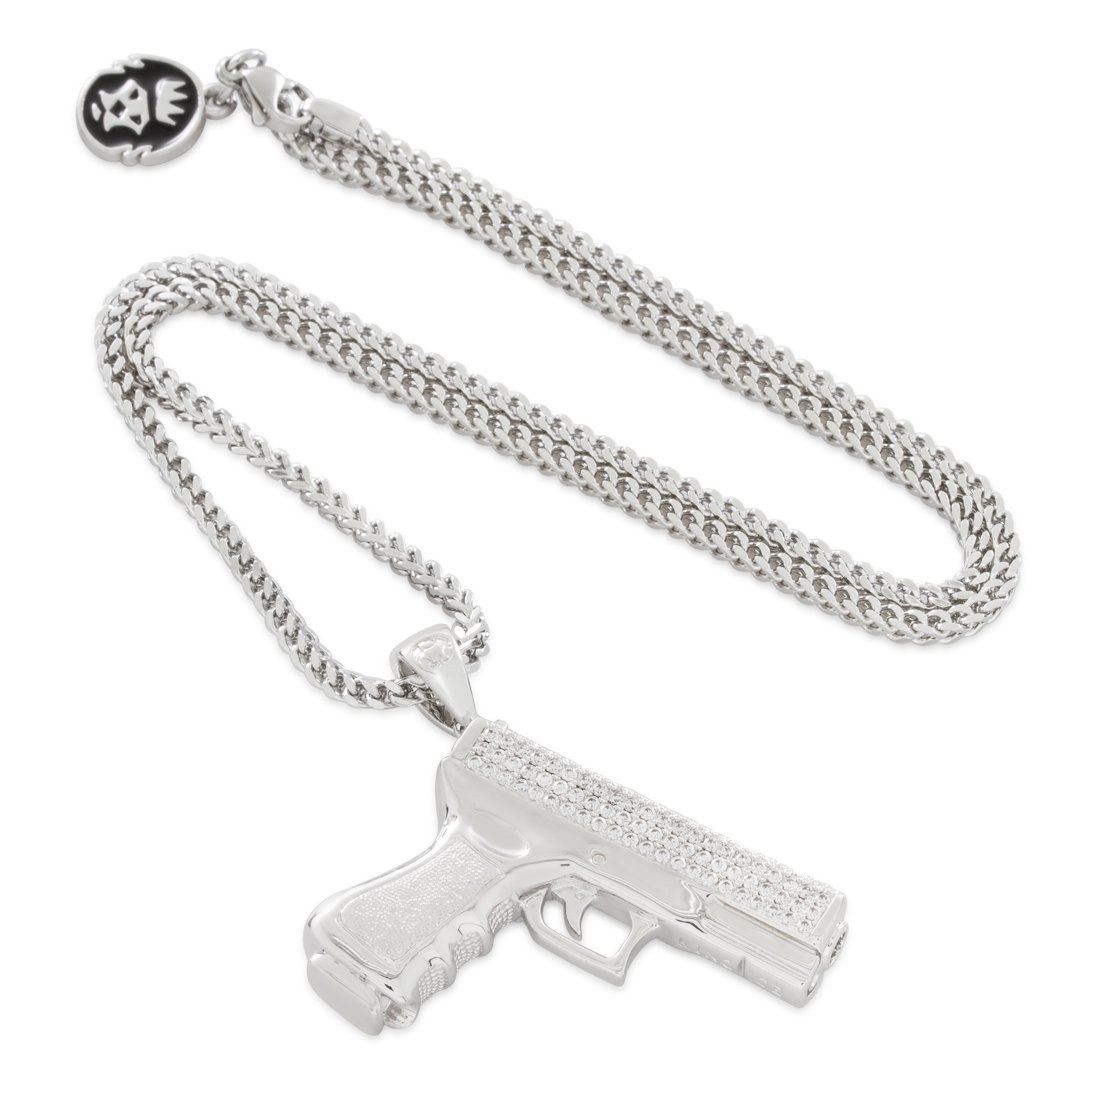 Iced Handgun Necklace